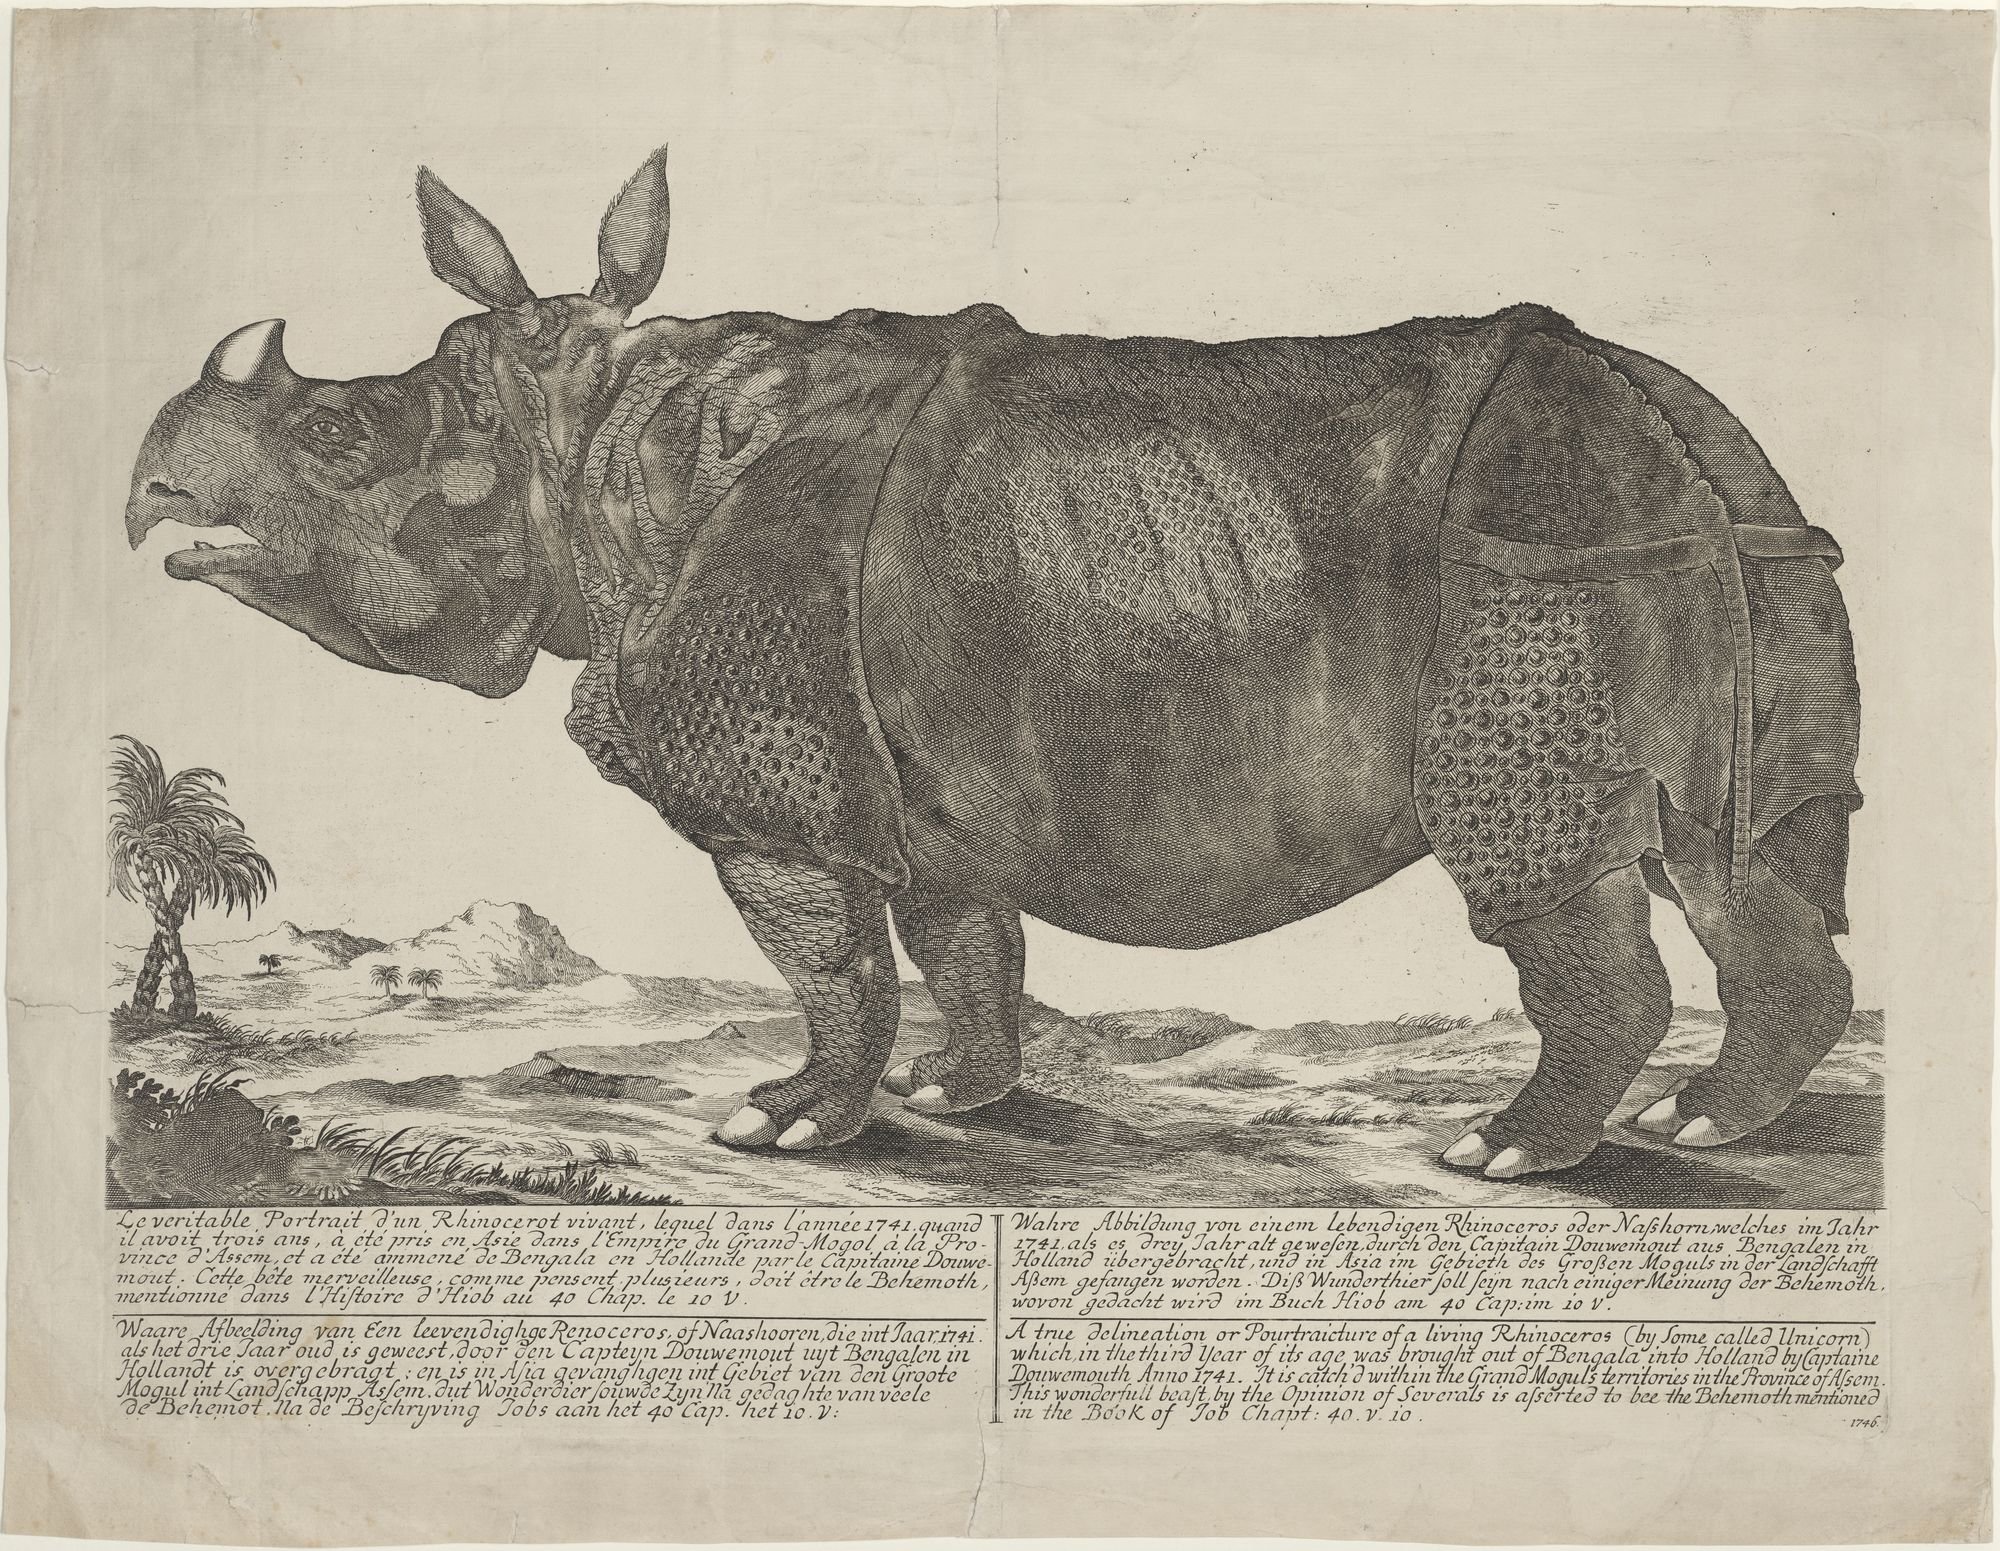 Le veritable Portrait d'unn Rhinocerot vivant, lequel dans l'année 1741 quand/...doit etre le Behemoth,/ mentionne dans l'Histoire d'Hiob au 40 Chap.  (Kulturstiftung Sachsen-Anhalt Public Domain Mark)